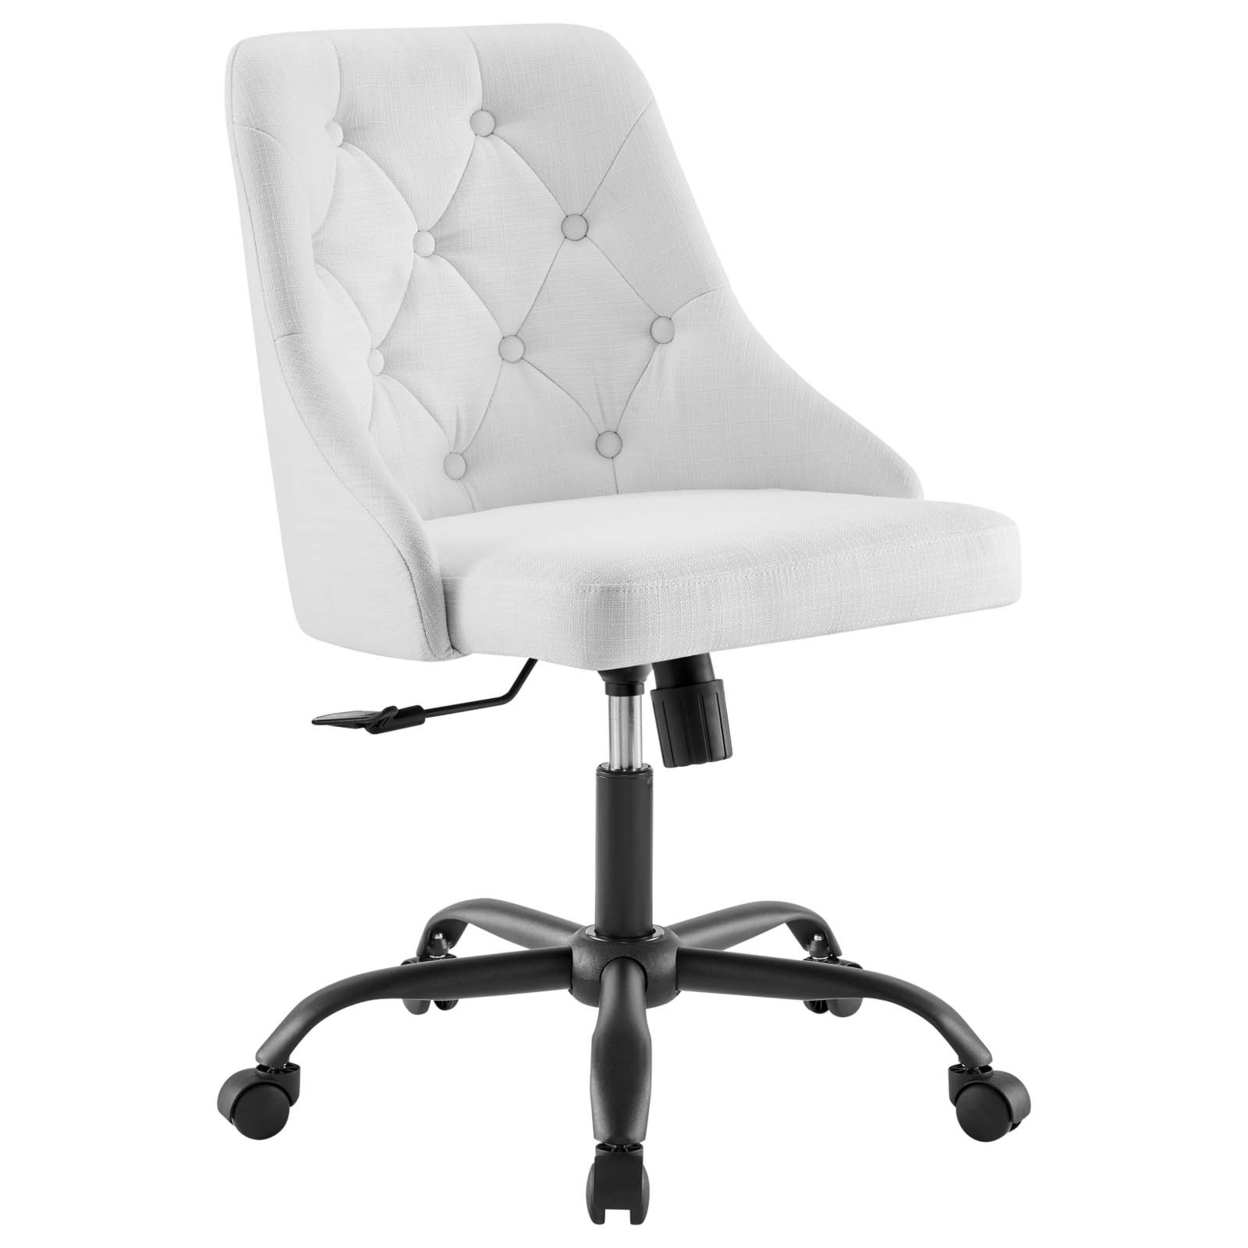 Distinct Tufted Swivel Upholstered Office Chair, Black White